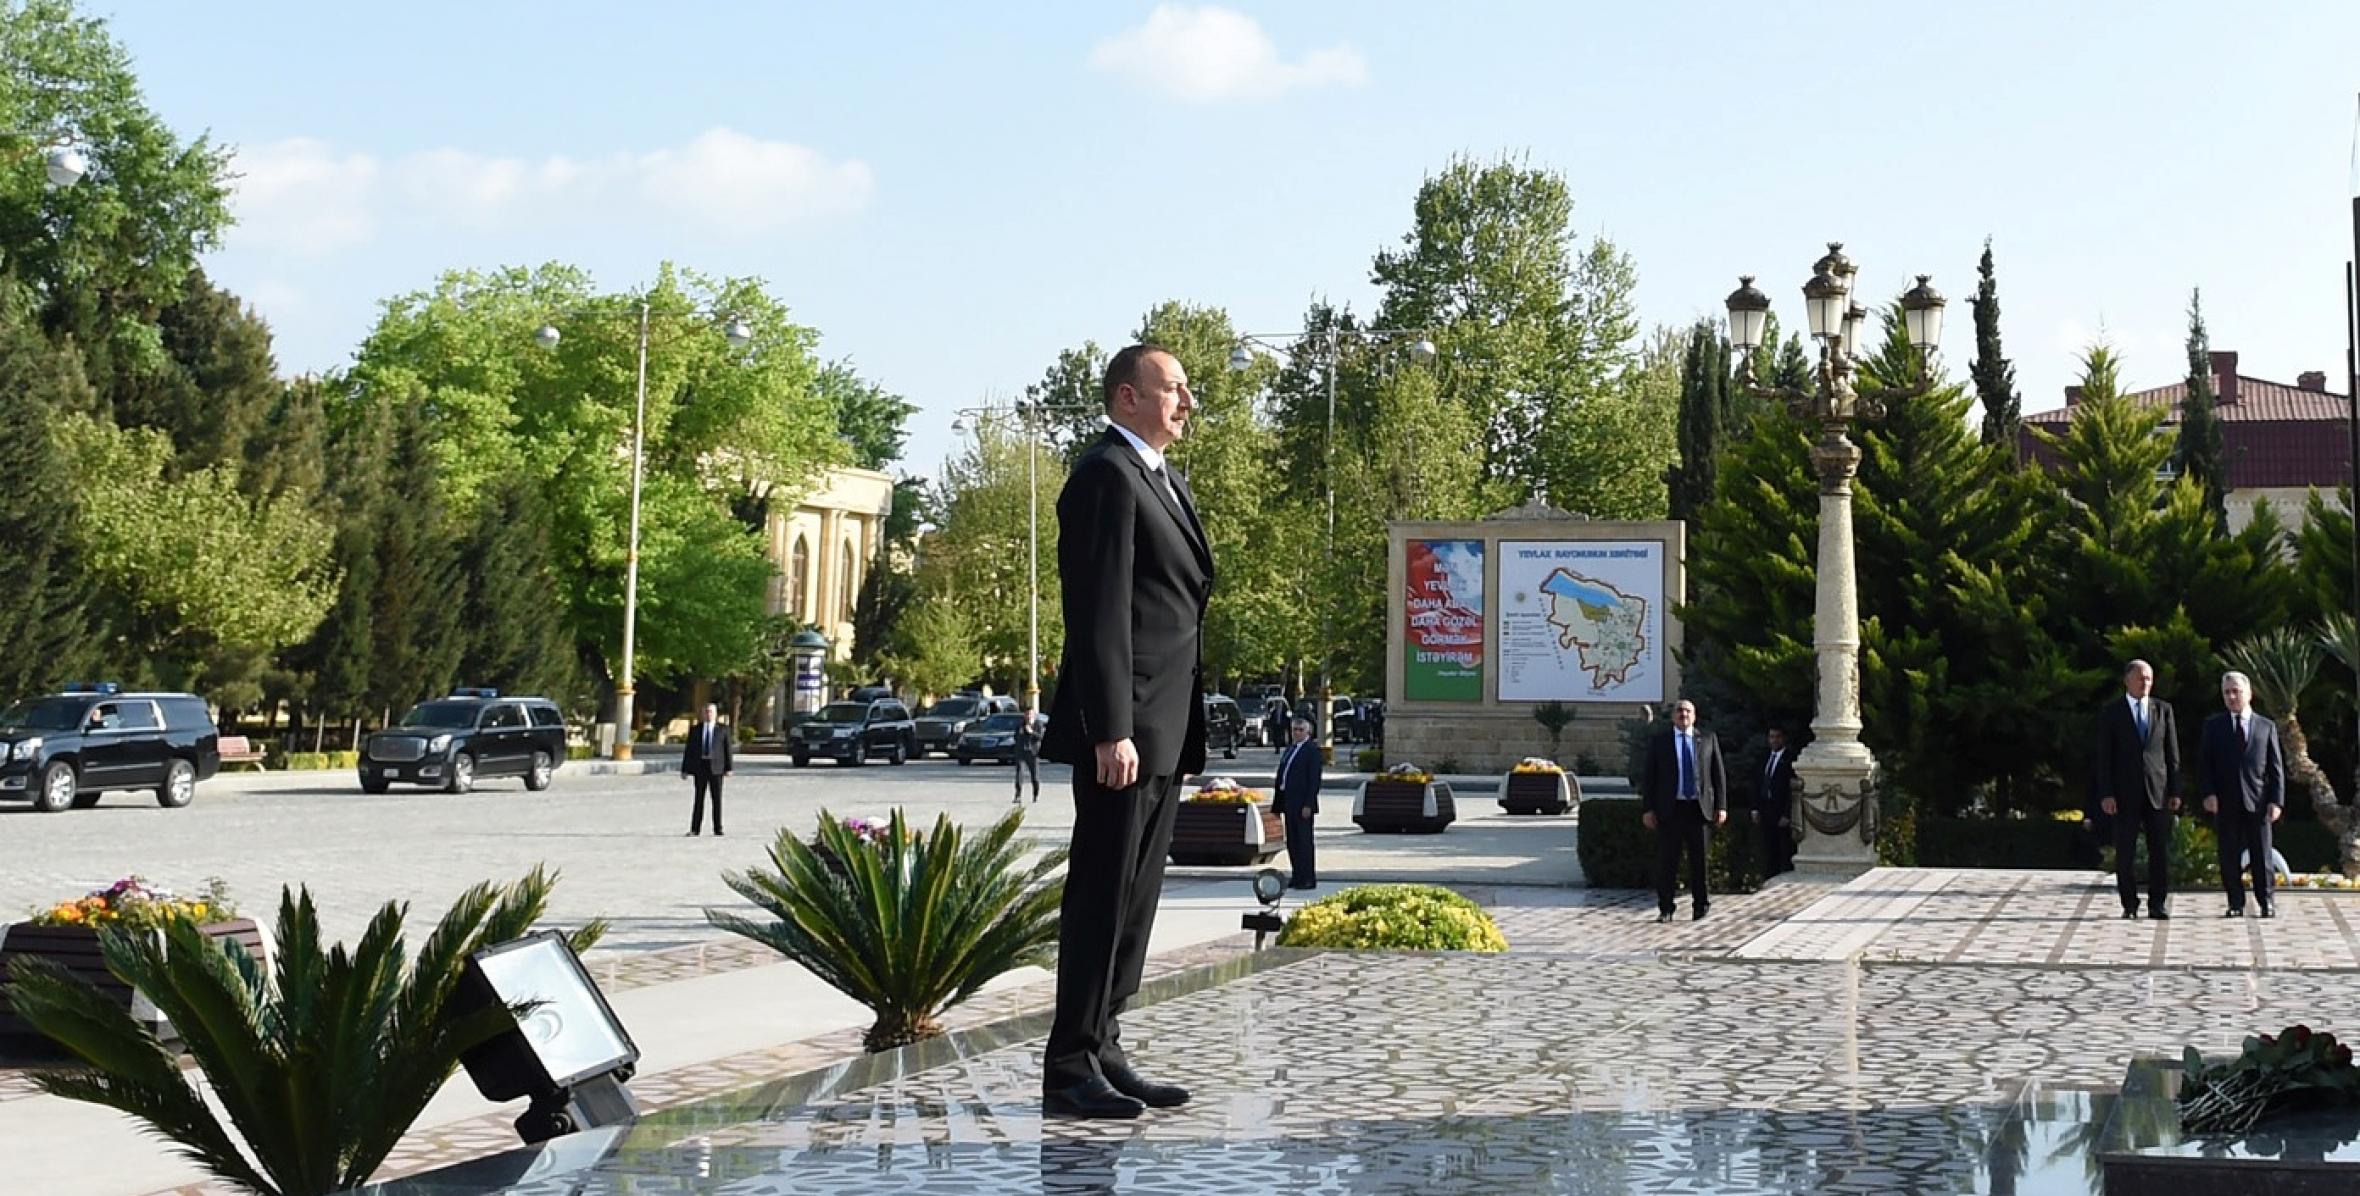 Ilham Aliyev visited statue of national leader Heydar Aliyev in Yevlakh